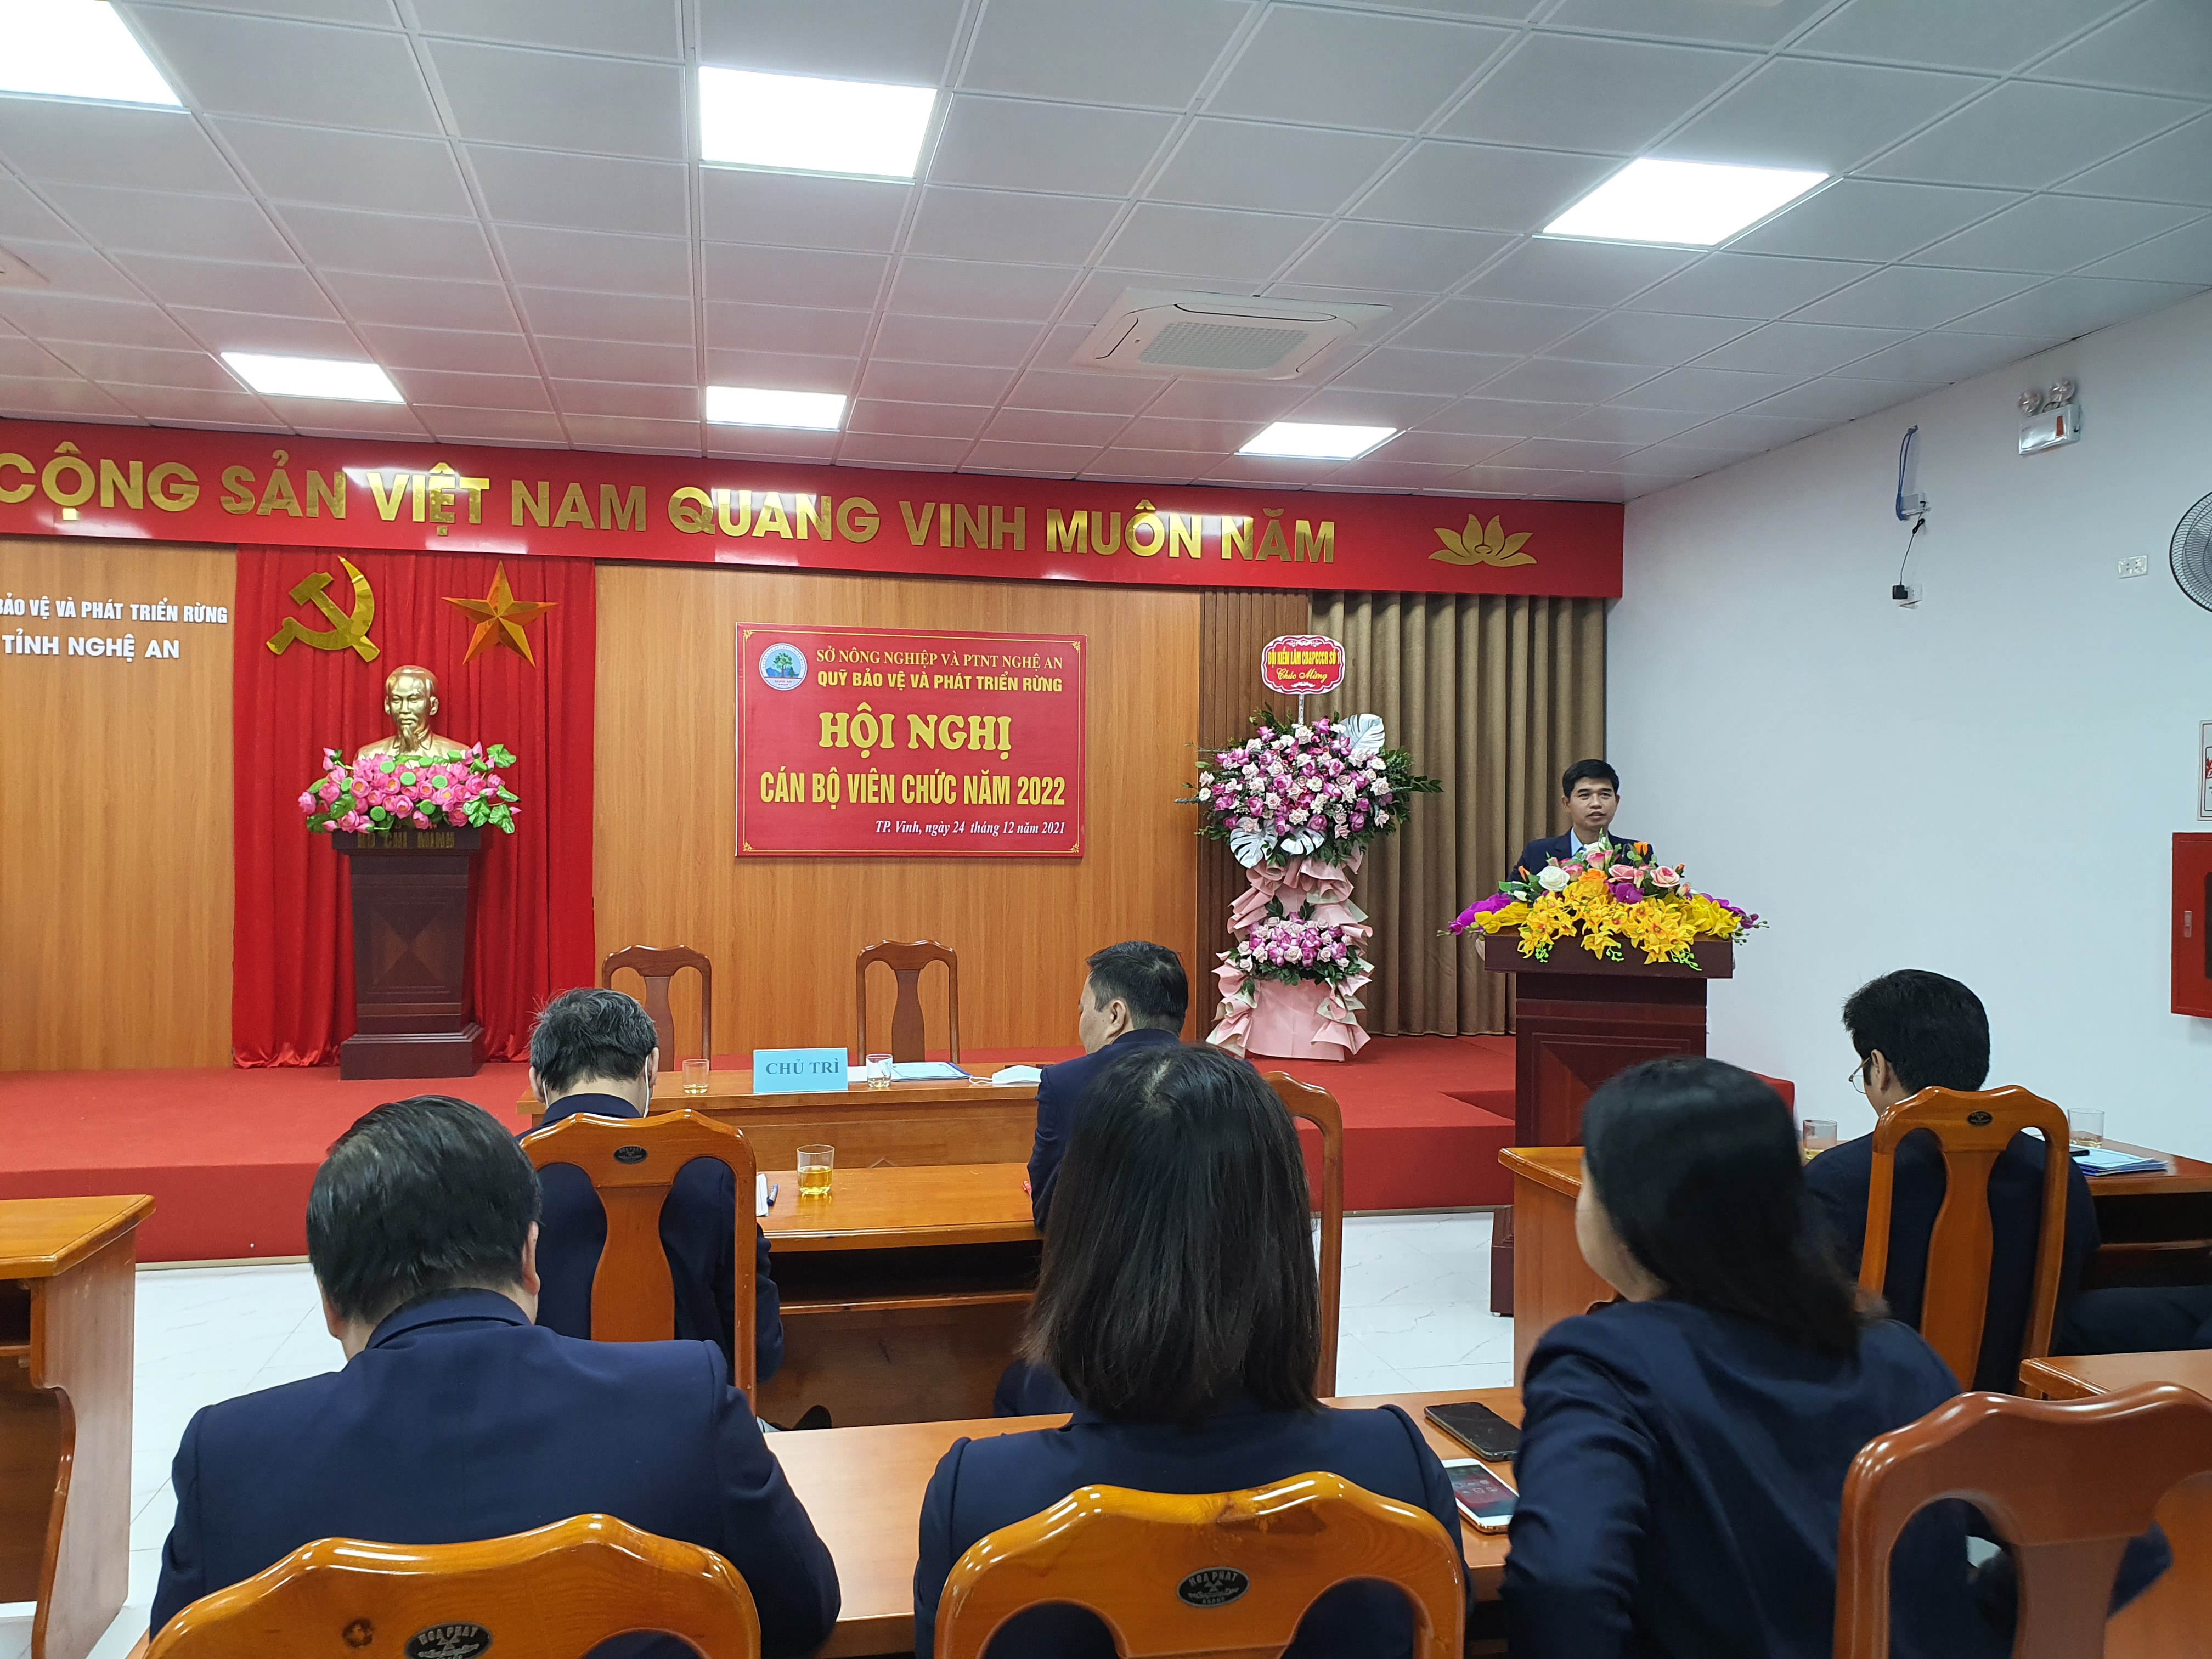 Hội nghị Cán bộ viên chức năm 2022 Quỹ Bảo vệ và Phát triển rừng tỉnh Nghệ An 